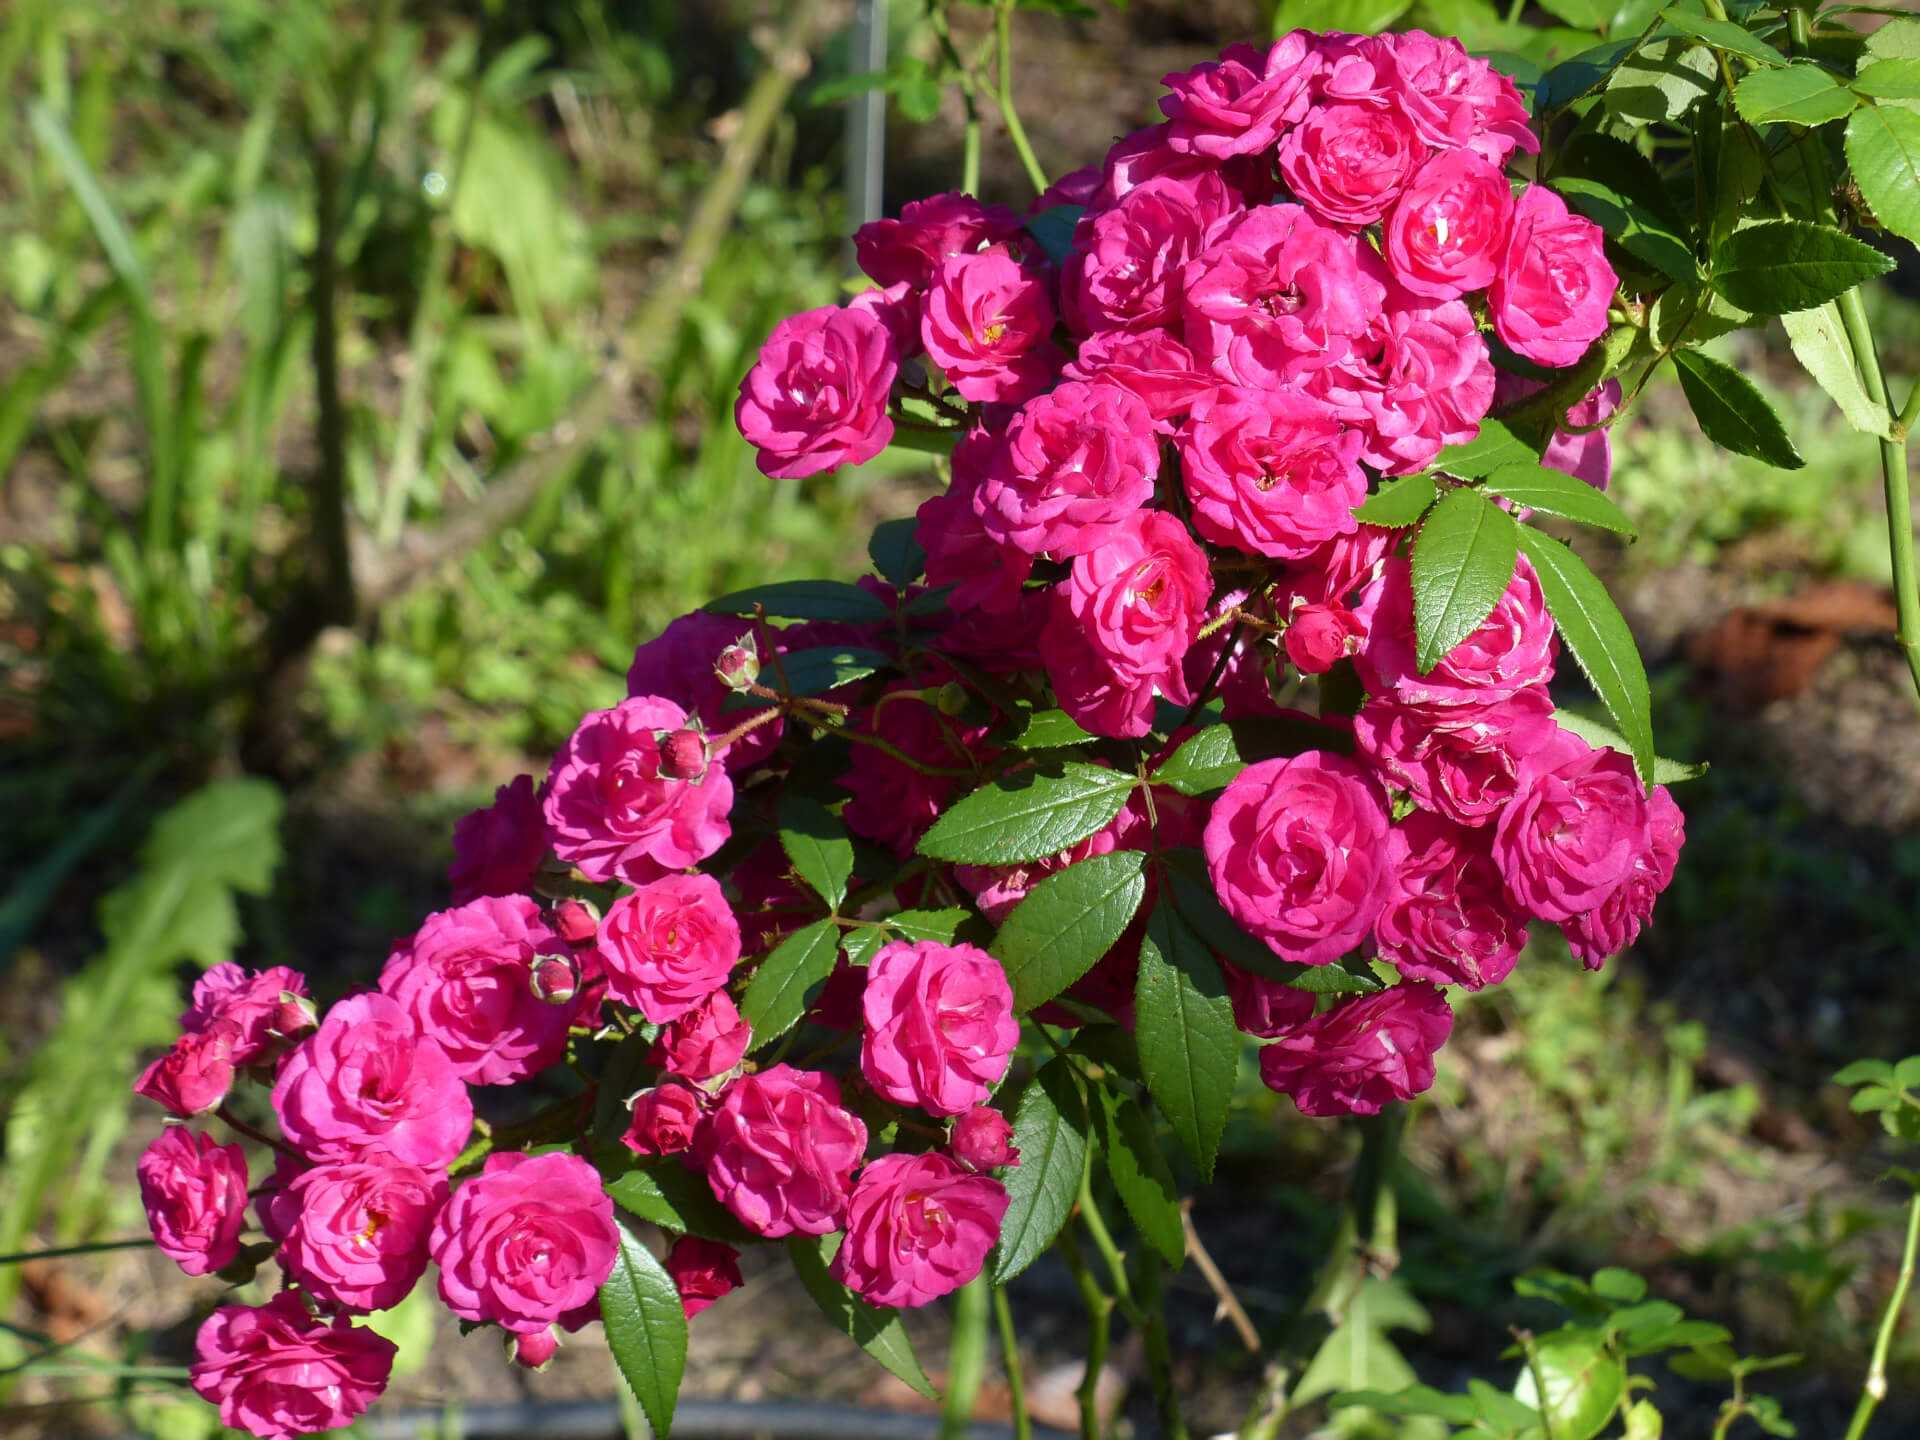 Мускусные розы: особенности, популярные сорта, тонкости посадки и ухода